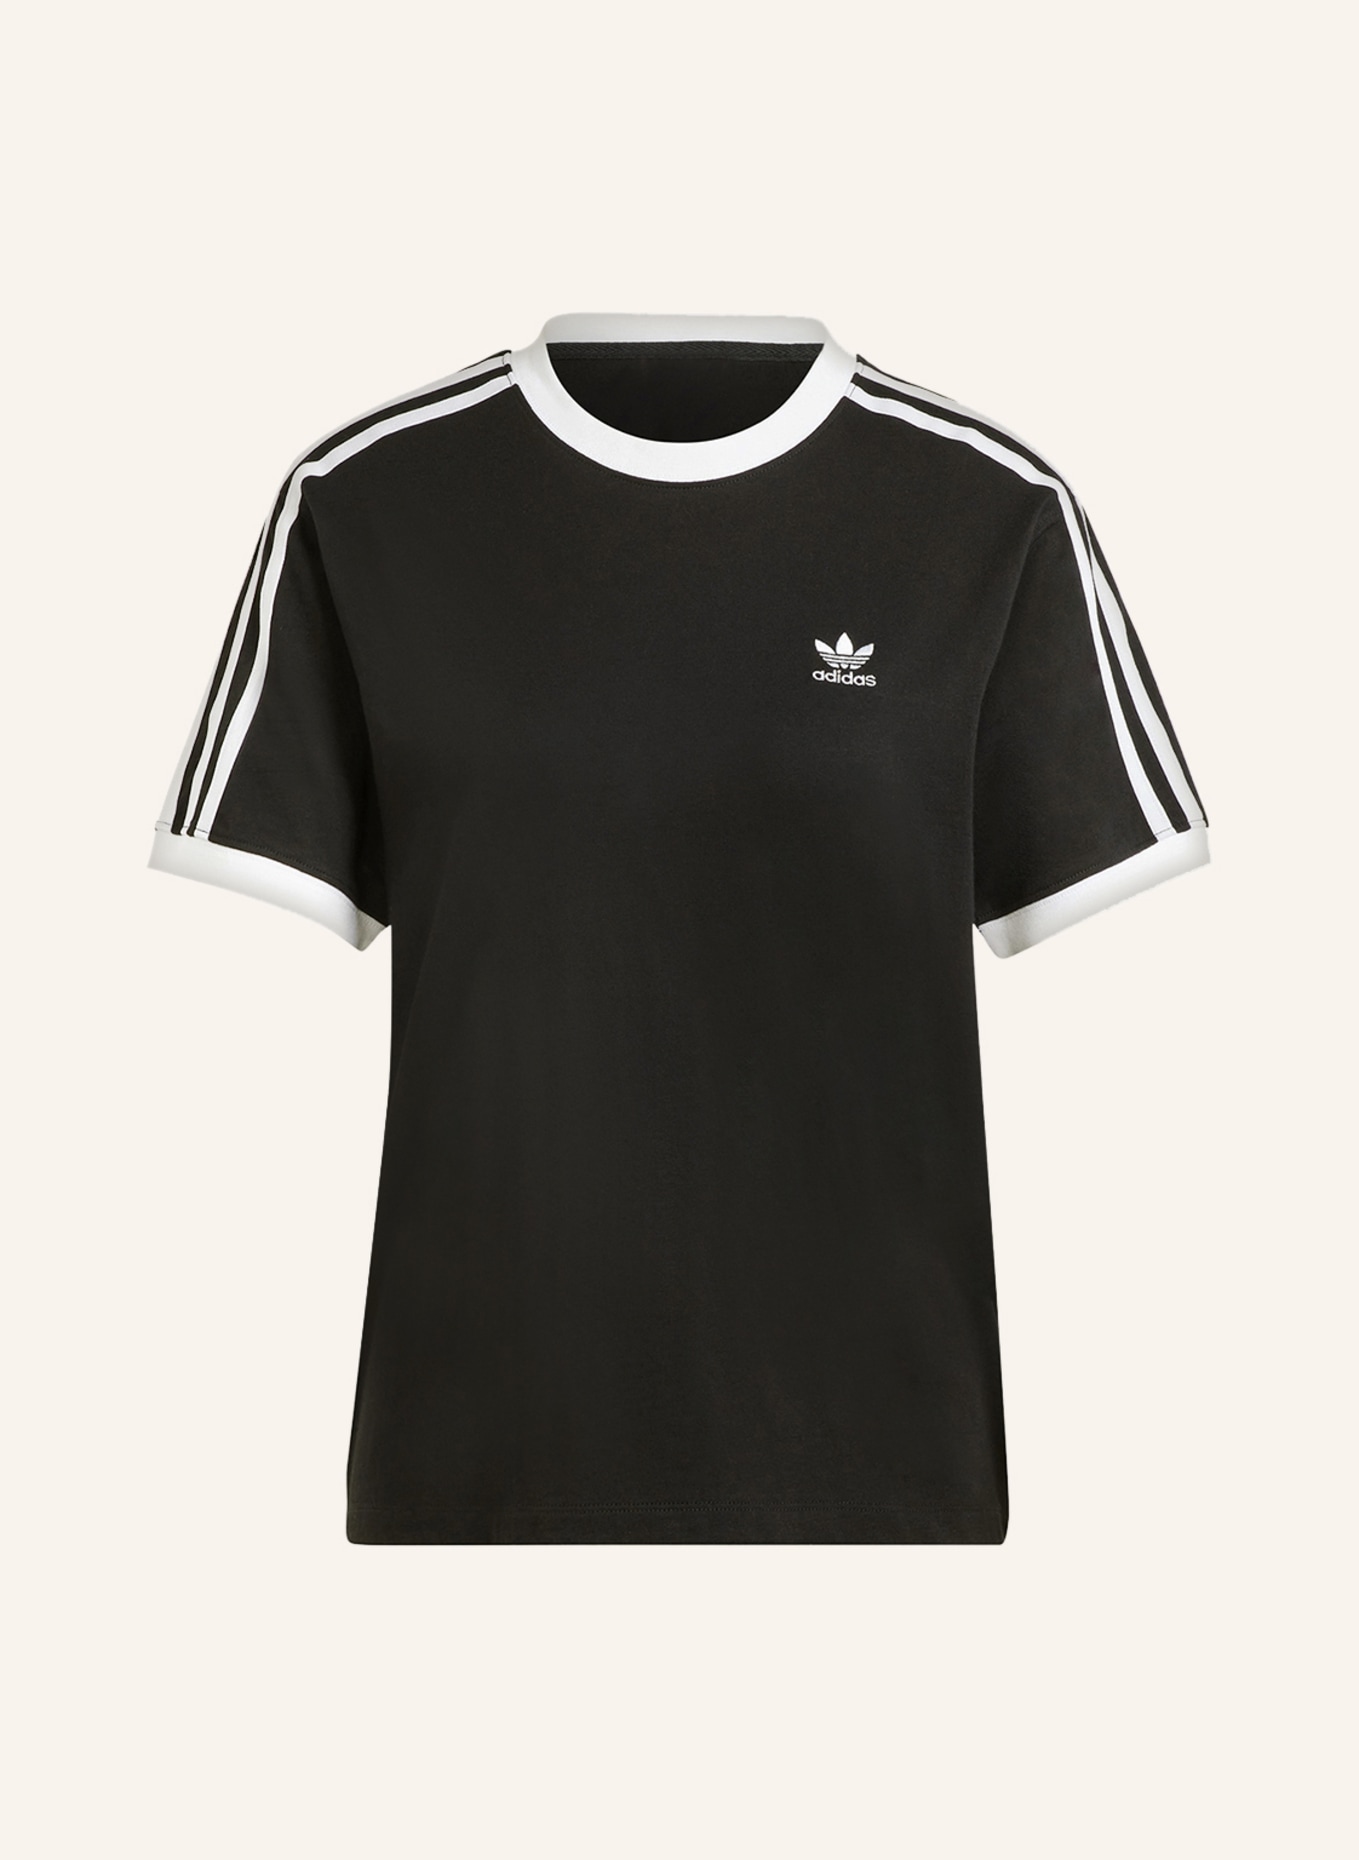 adidas Originals T-shirt ADICOLOR CLASSICS in black/ white